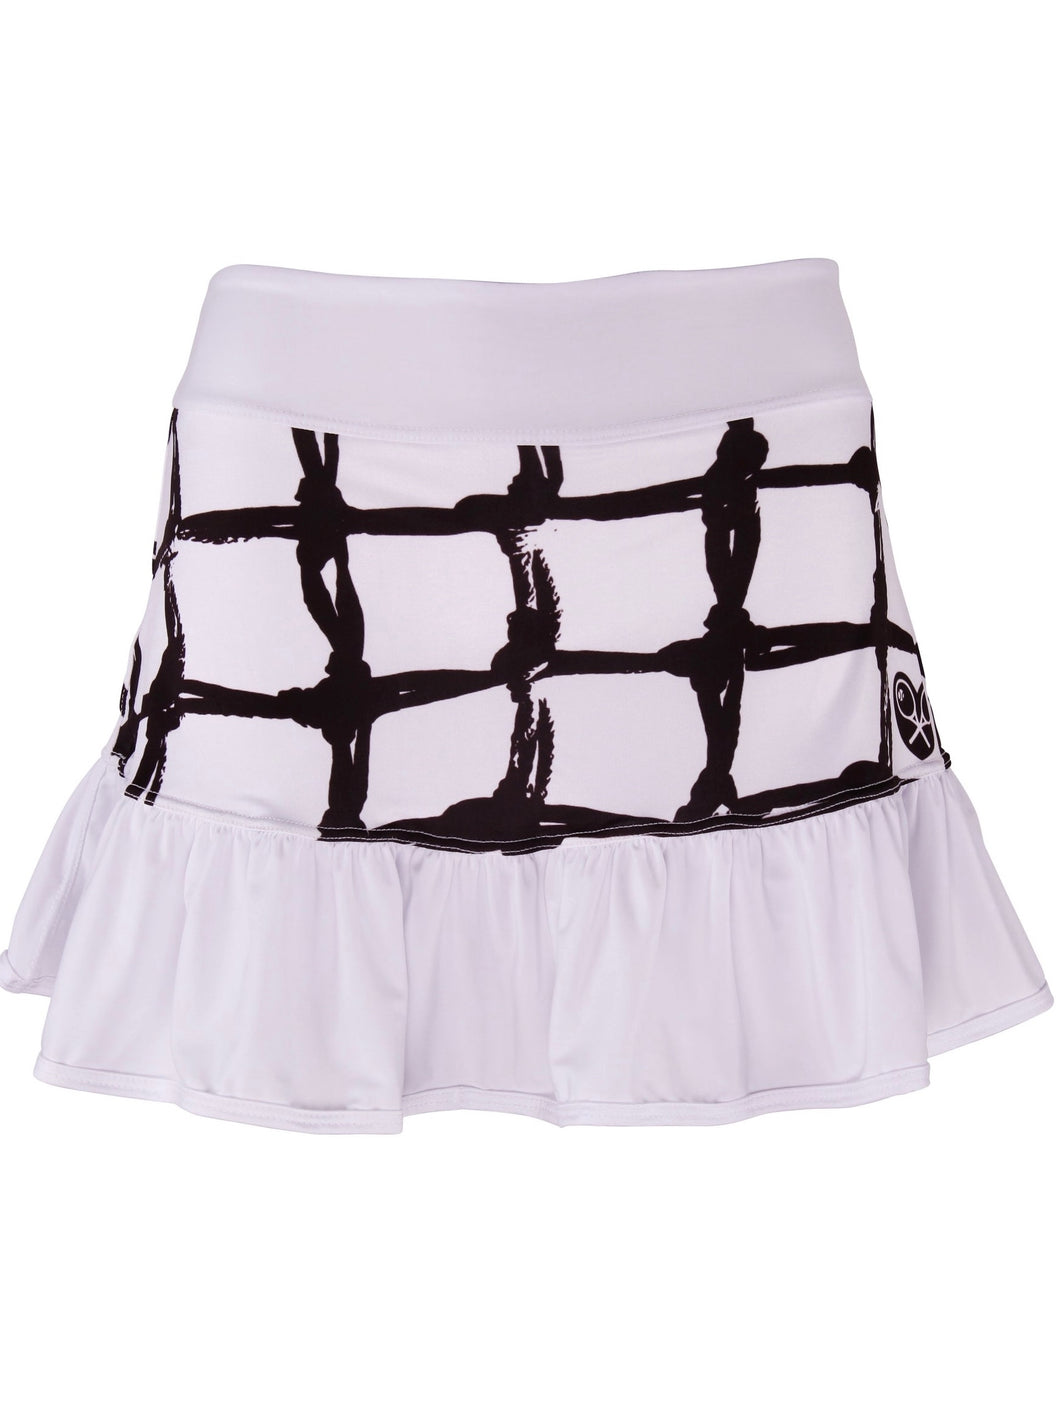 Black Tennis Net on White Ruffle Skirt - I LOVE MY DOUBLES PARTNER!!!